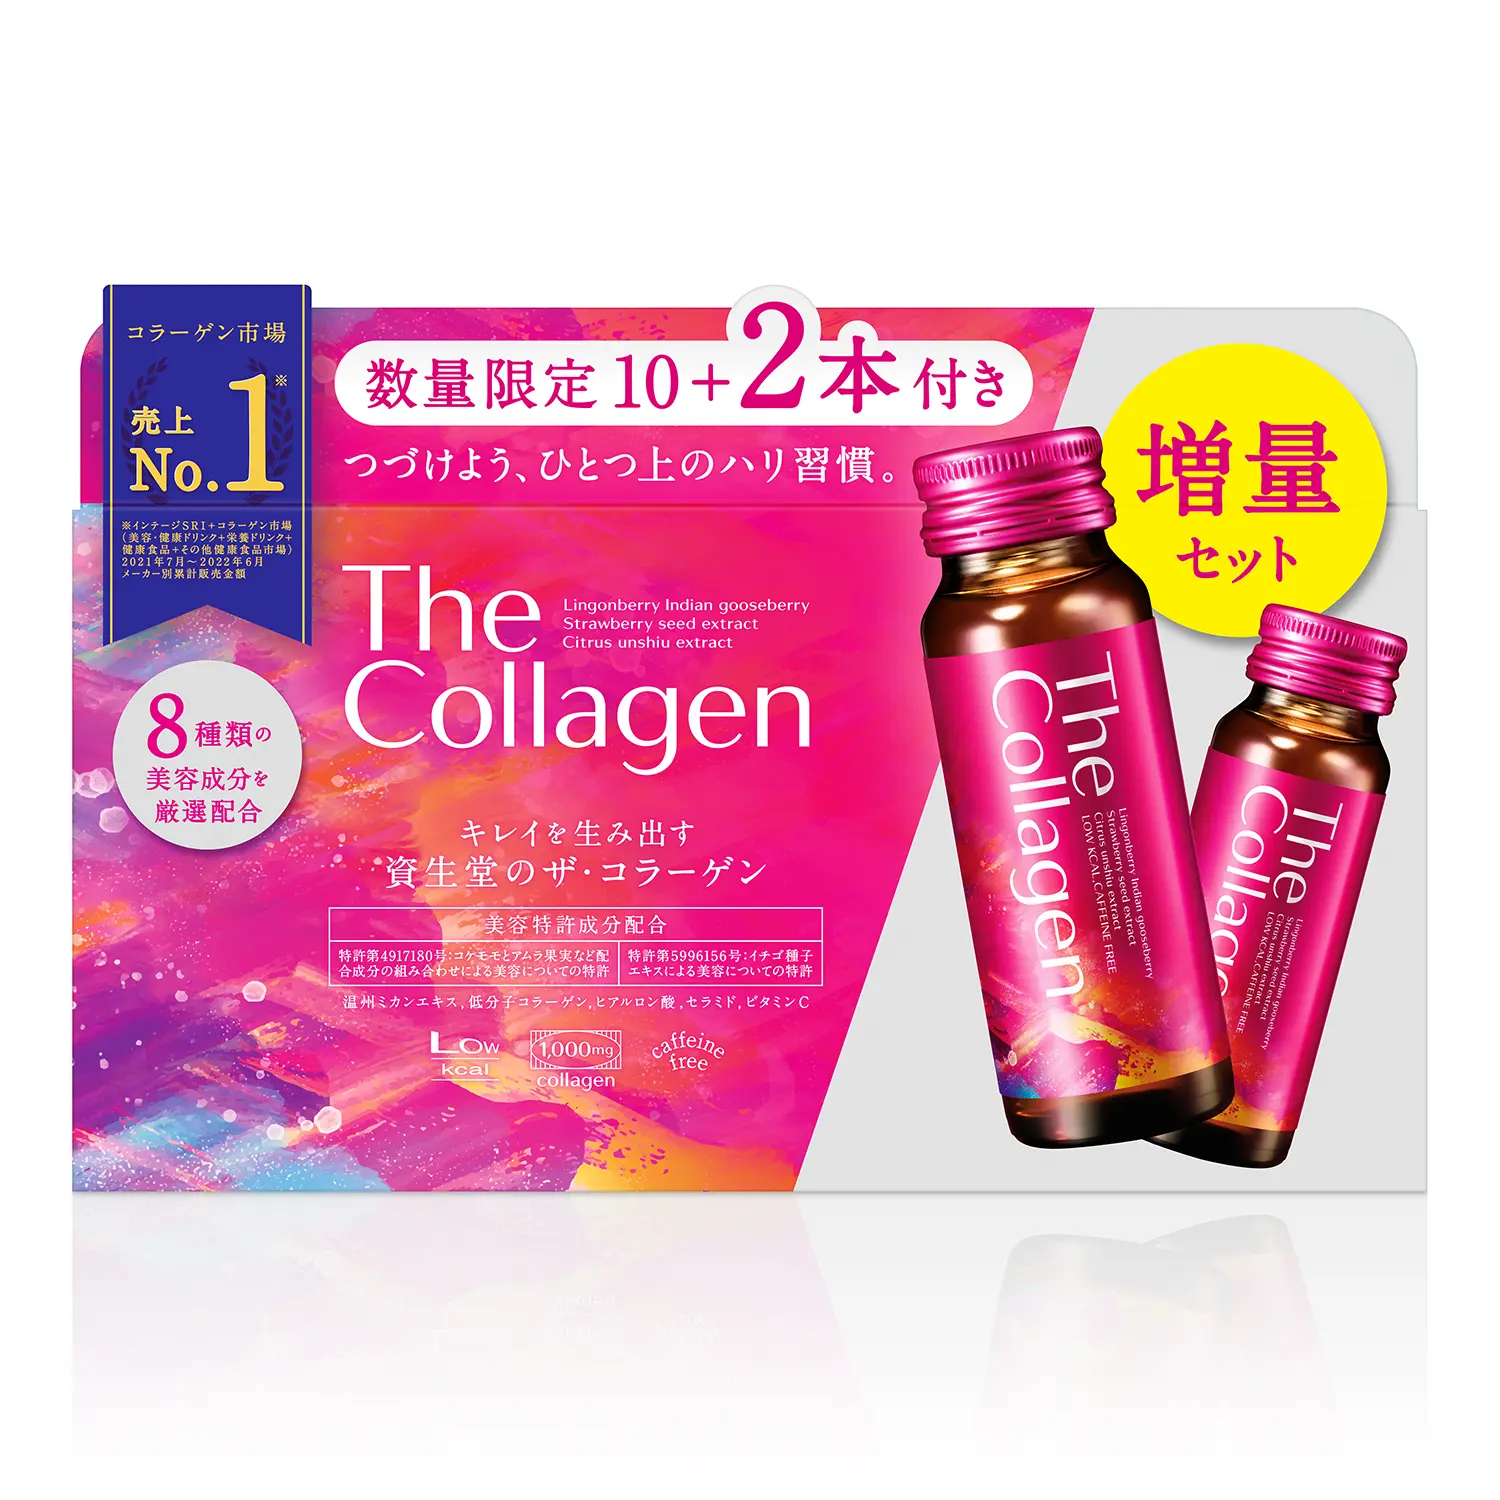 資生堂 ザ コラーゲンEXR ザコラーゲン 50ml×10本shiseido コラーゲンドリンク 資生堂ザコラーゲン コラーゲン ドリンク 飲料  collagen